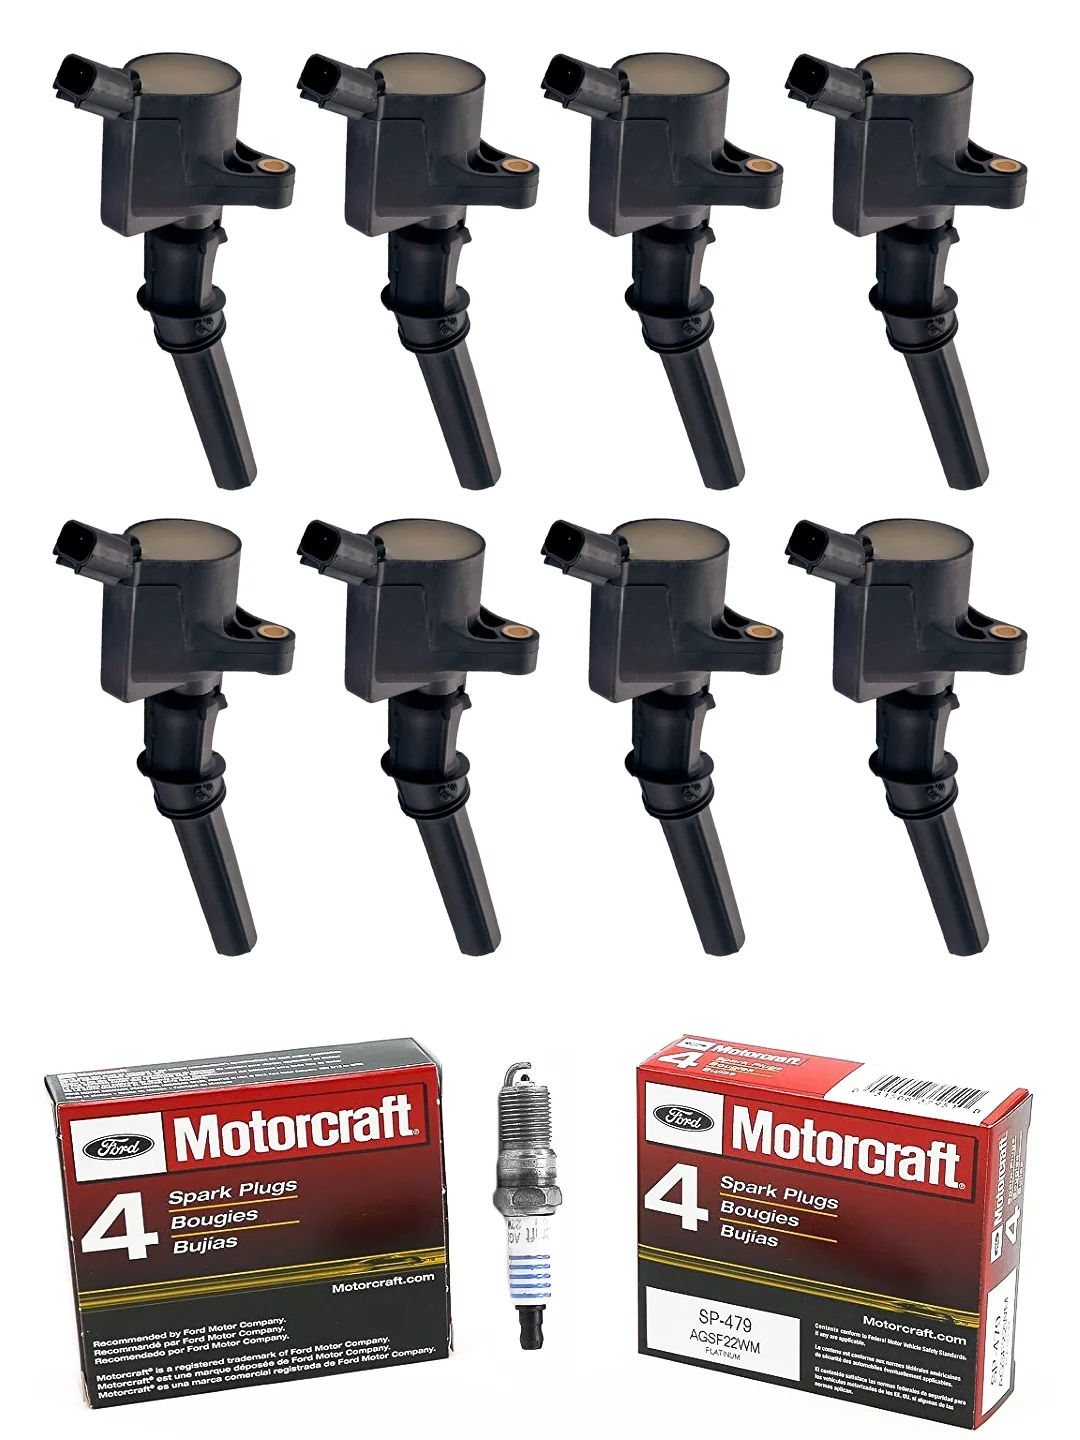 Set of 8 ISA Ignition Coils & 8 Motorcraft Spark Plugs Compatible with 1998-2019 Ford E150 E250 E350 E450 and F150 F250 F350 4.6L 5.4L 6.8L Replacement for FD503 SP479